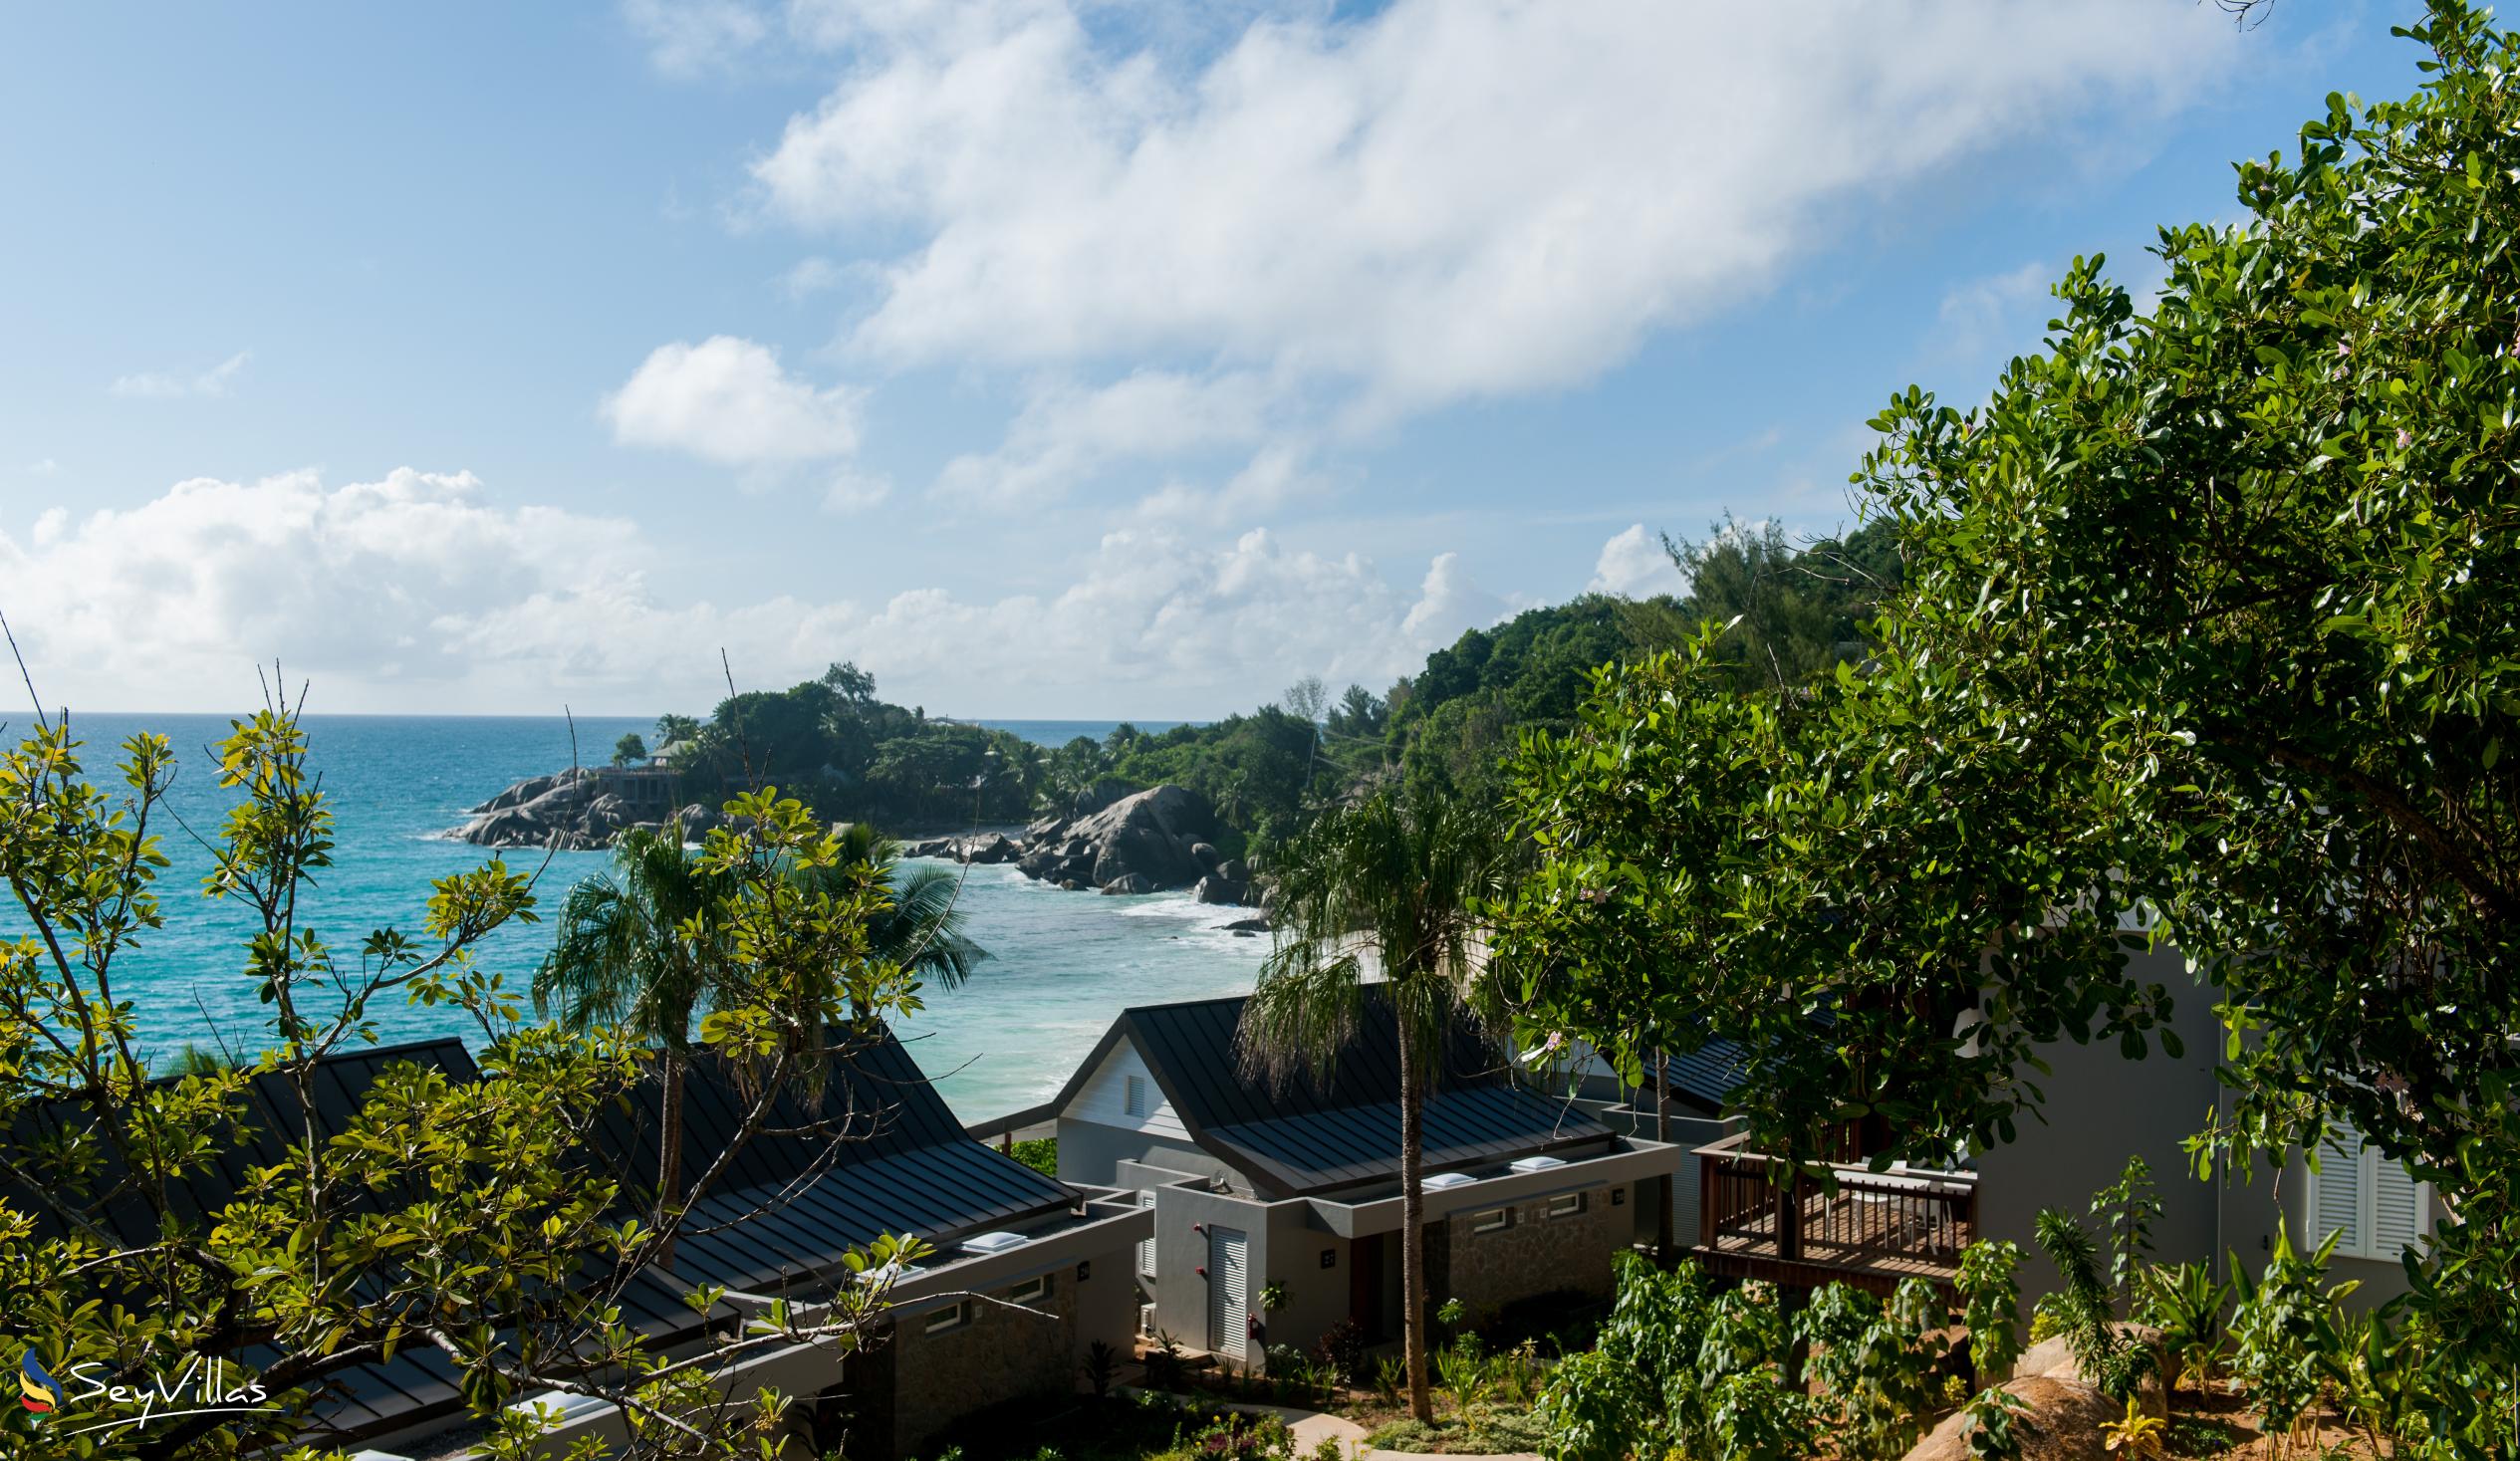 Foto 6: Carana Beach Hotel - Extérieur - Mahé (Seychelles)